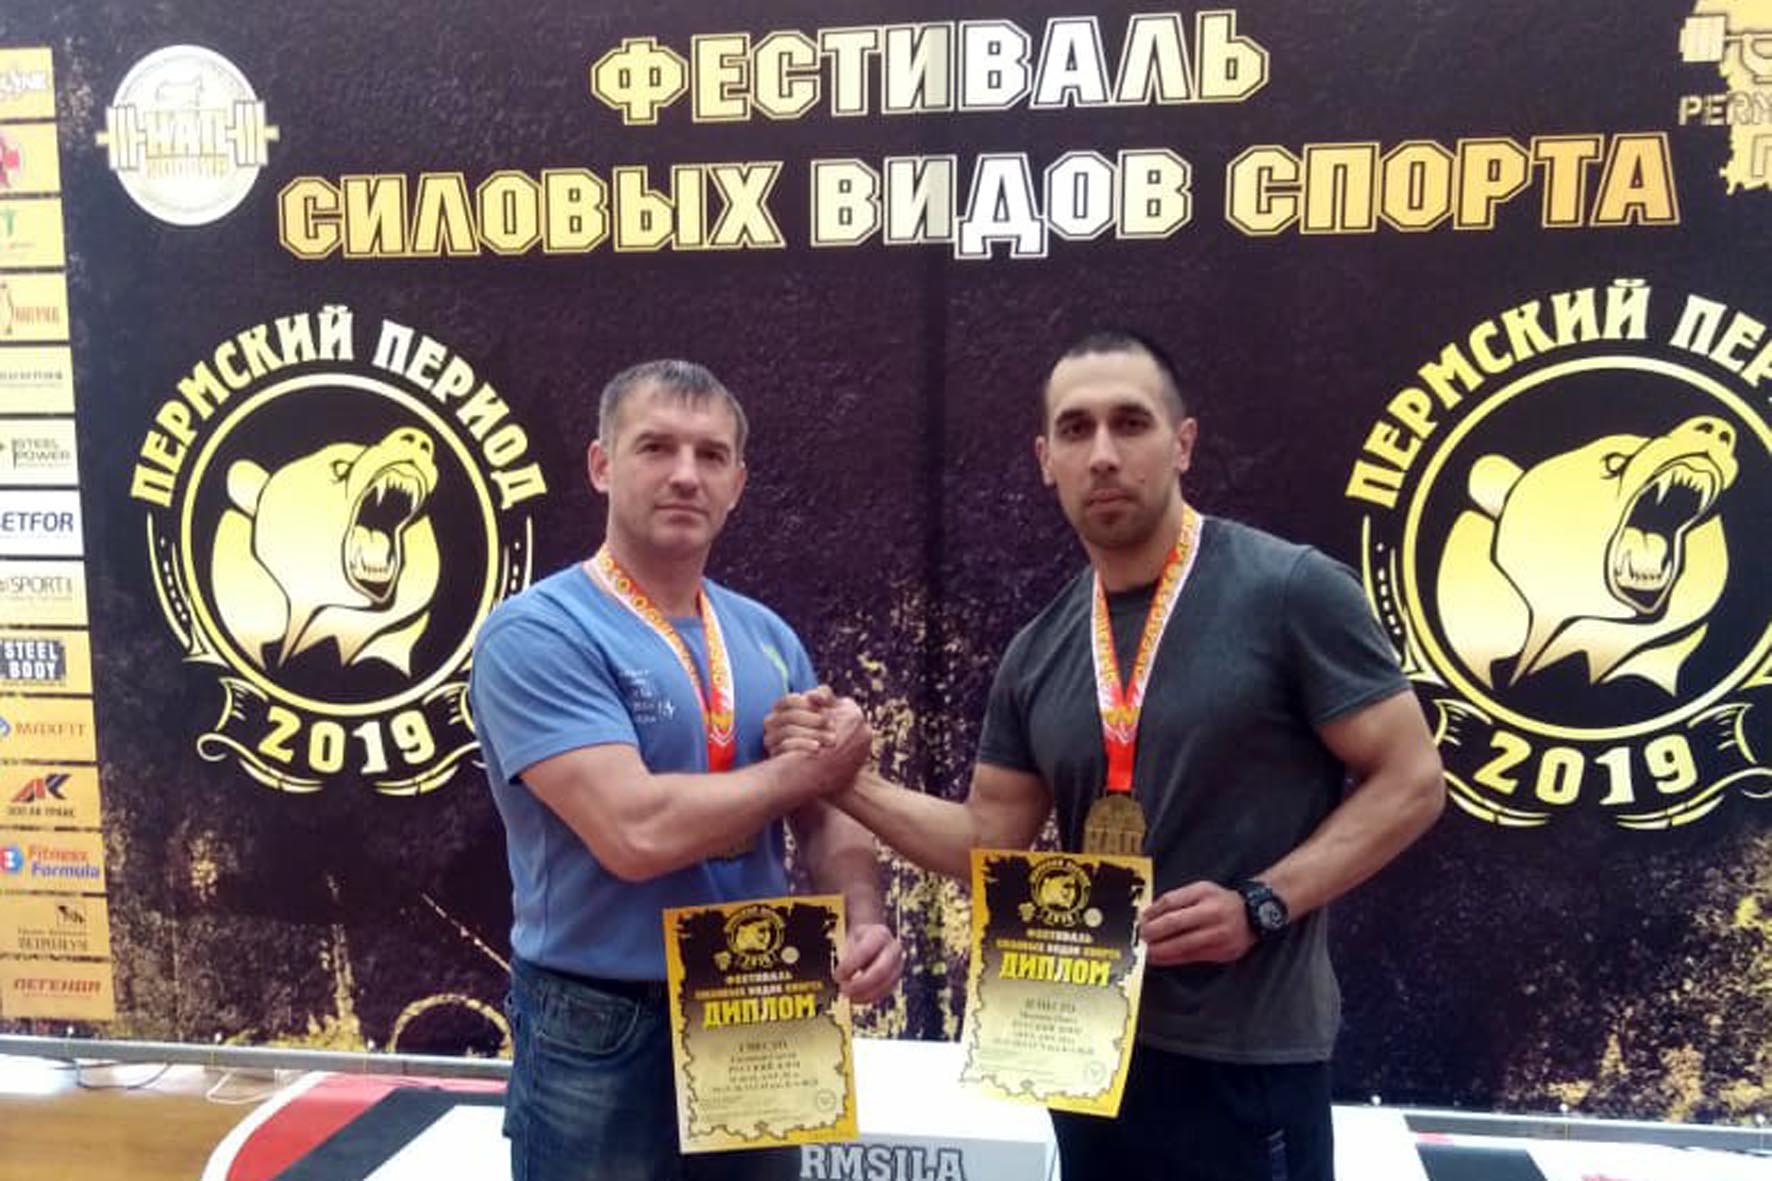 Команда УФСИН успешно выступила на Всероссийском фестивале по силовым видам спорта «Пермский период V».